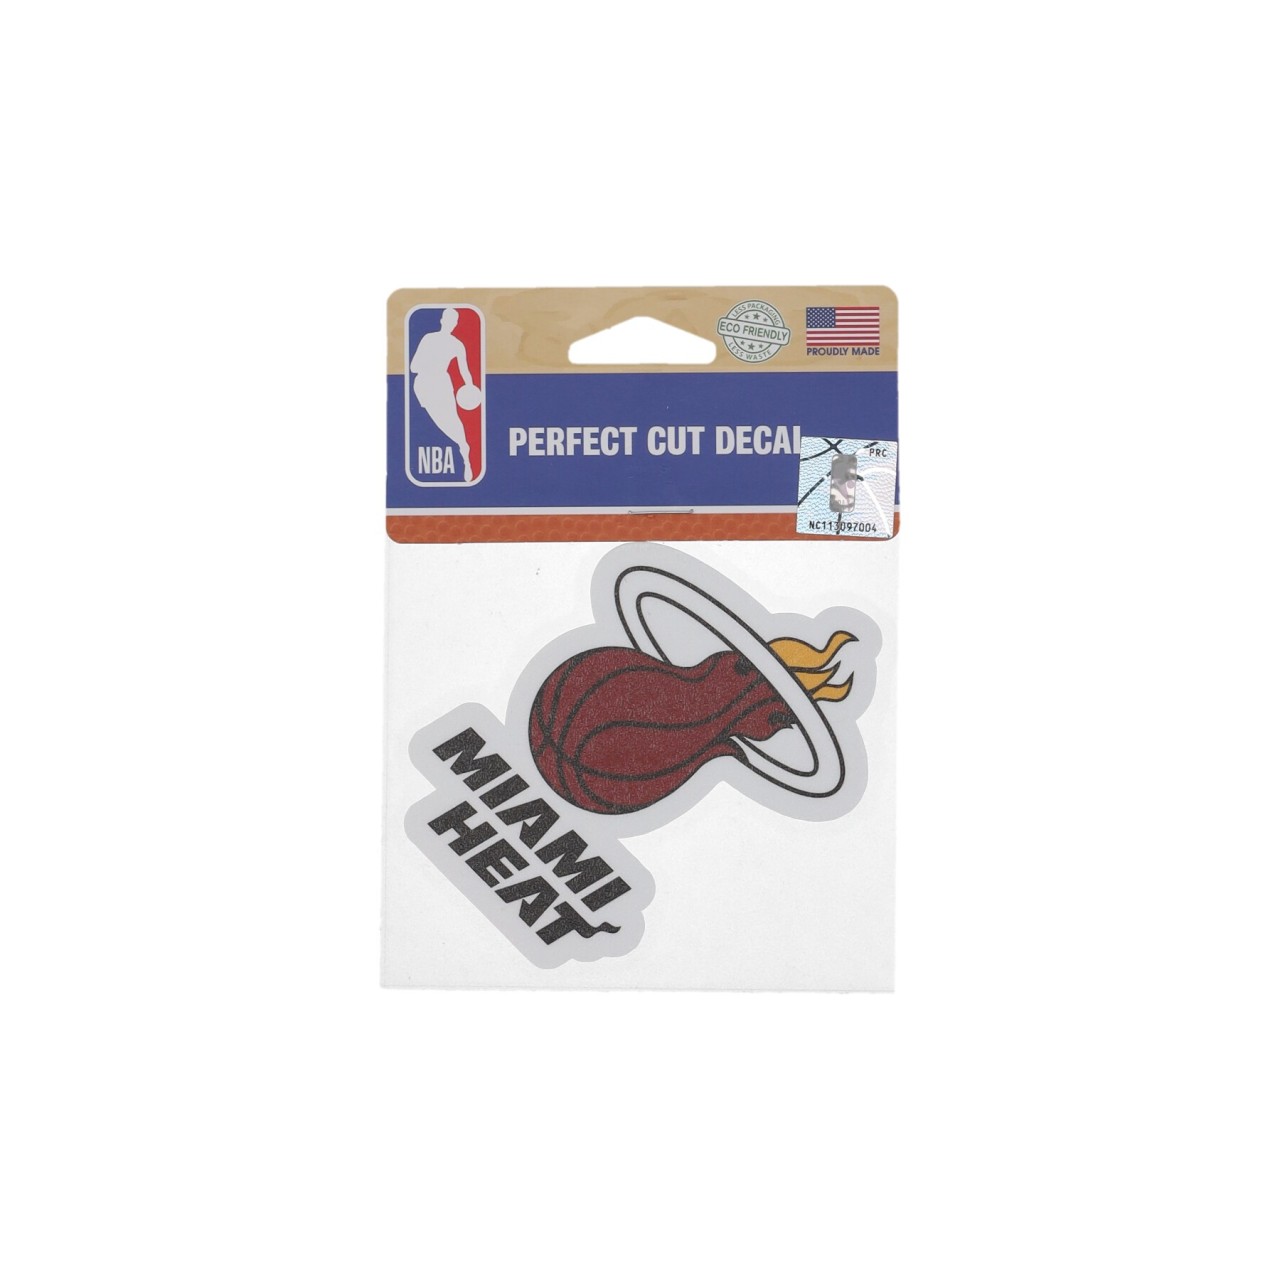 WINCRAFT NBA 4 x 4” PERFECT CUT DECAL MIAHEA 21770010